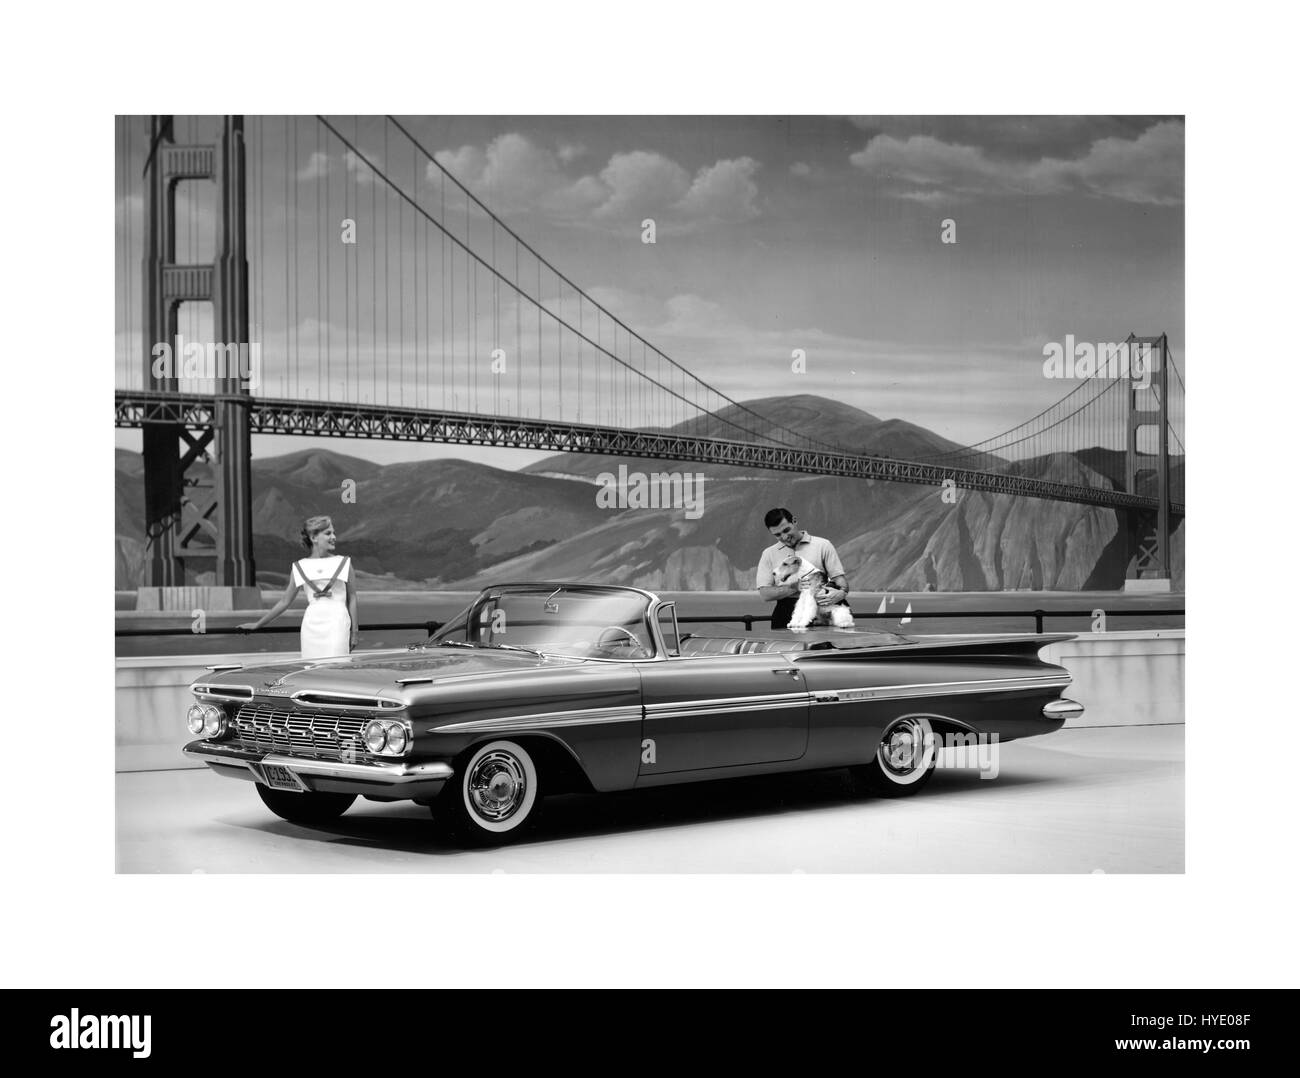 1959-Chevrolet Impala 2-türiges Cabriolet mit Golden Gate Bridge in San Francisco hinter einem Full-Size-Cabrio Auto von Chevrolet Motor Company gebaut Stockfoto